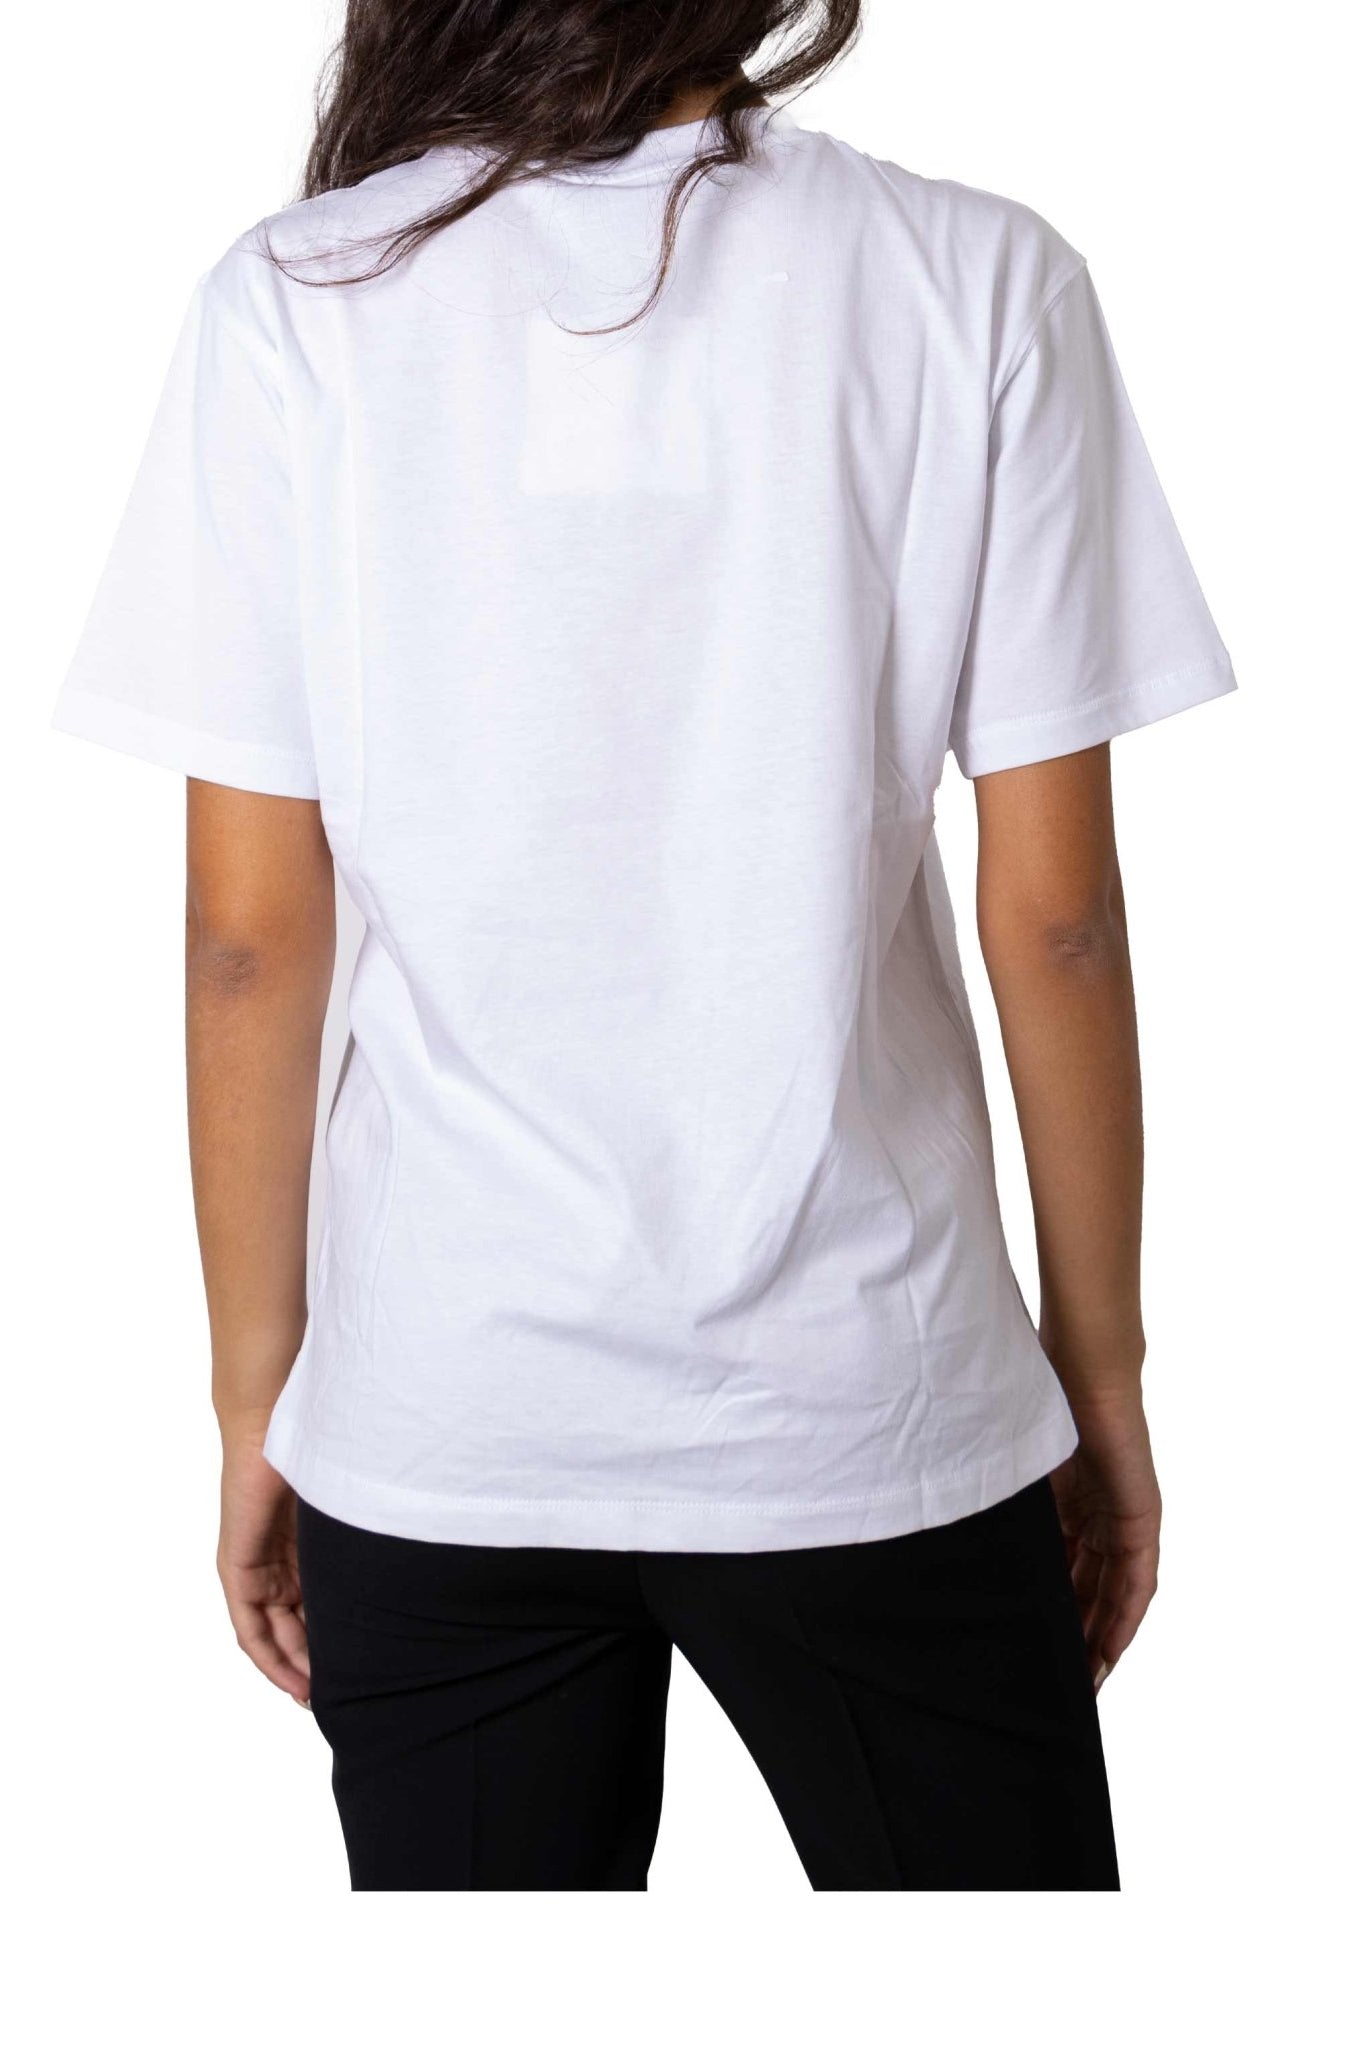 T-shirt bianca Ciao Amore- Giada Benincasa -Giorgioquinto